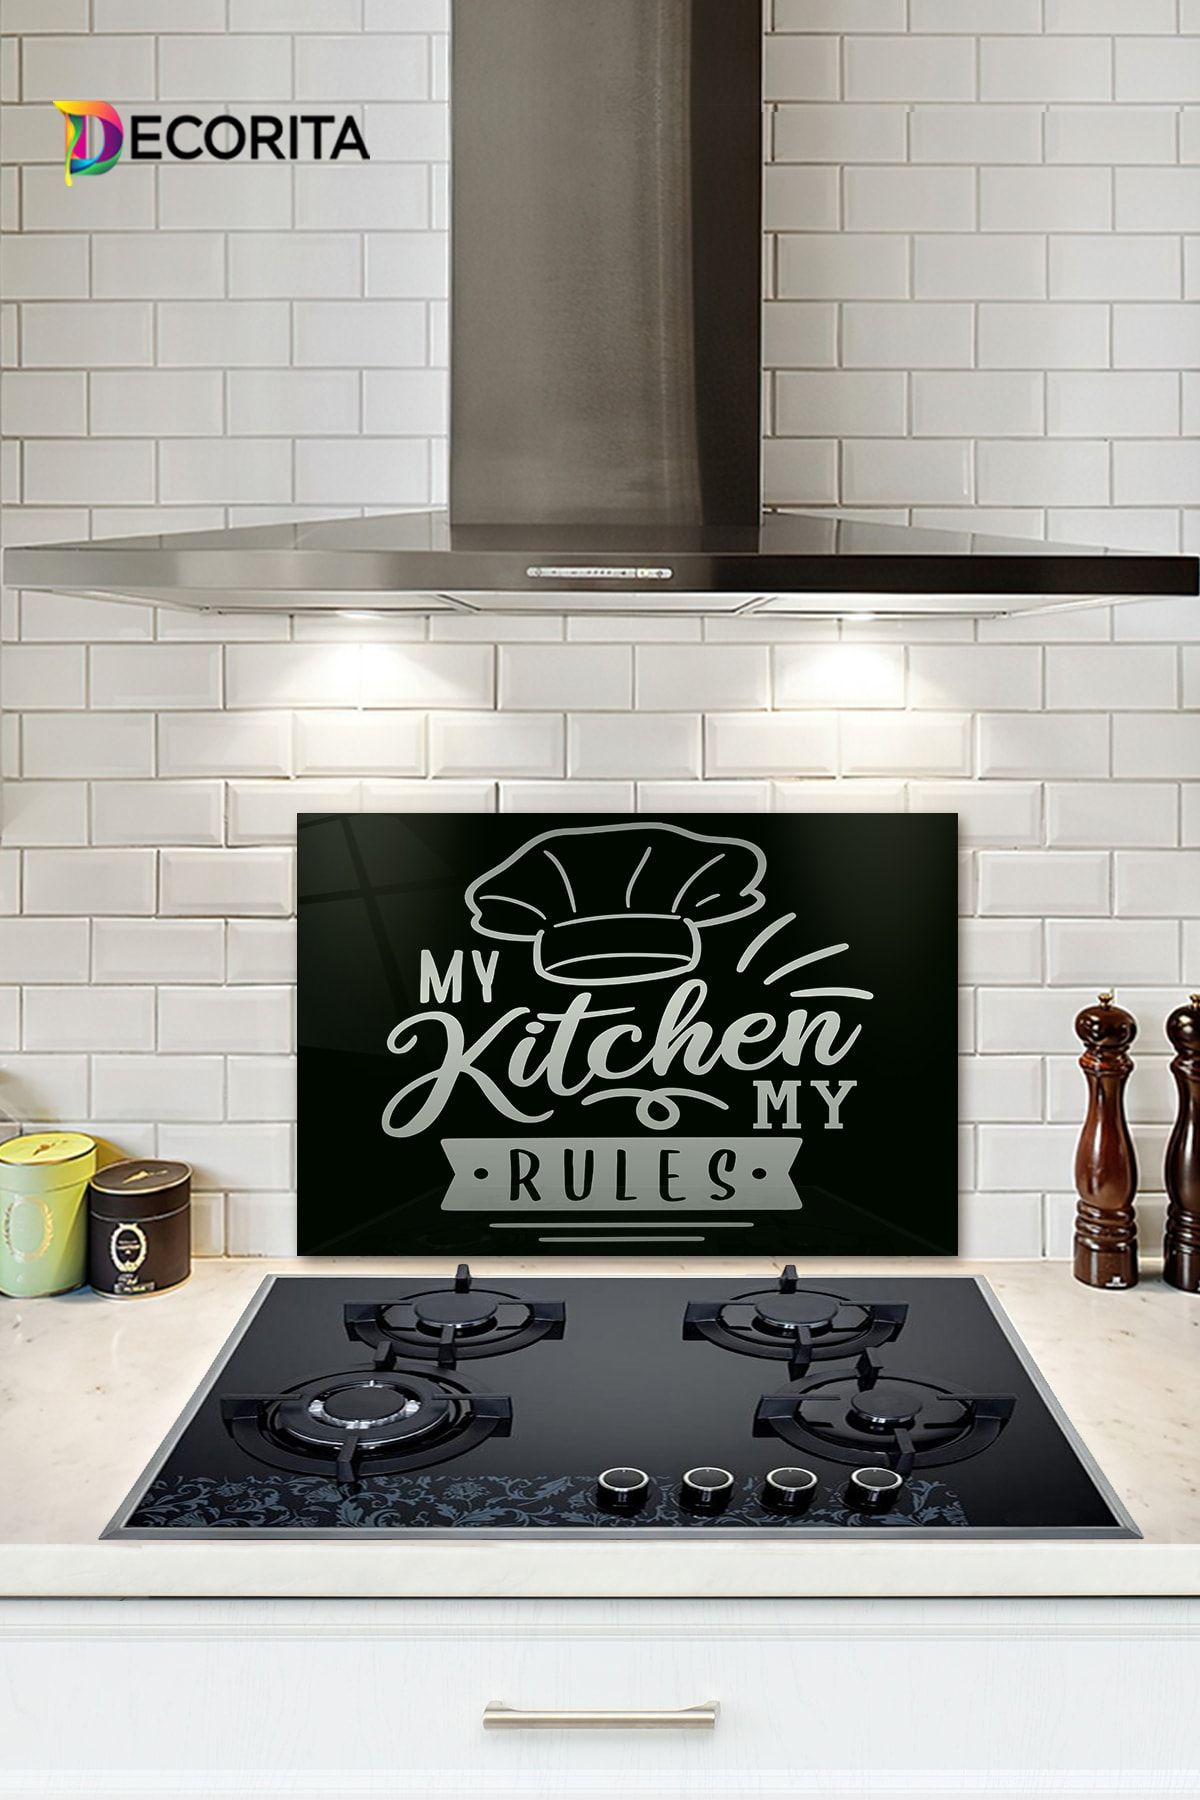 Decorita Cam Ocak Arkası Koruyucu | My Kitchen My Rules | 40cm X 60cm